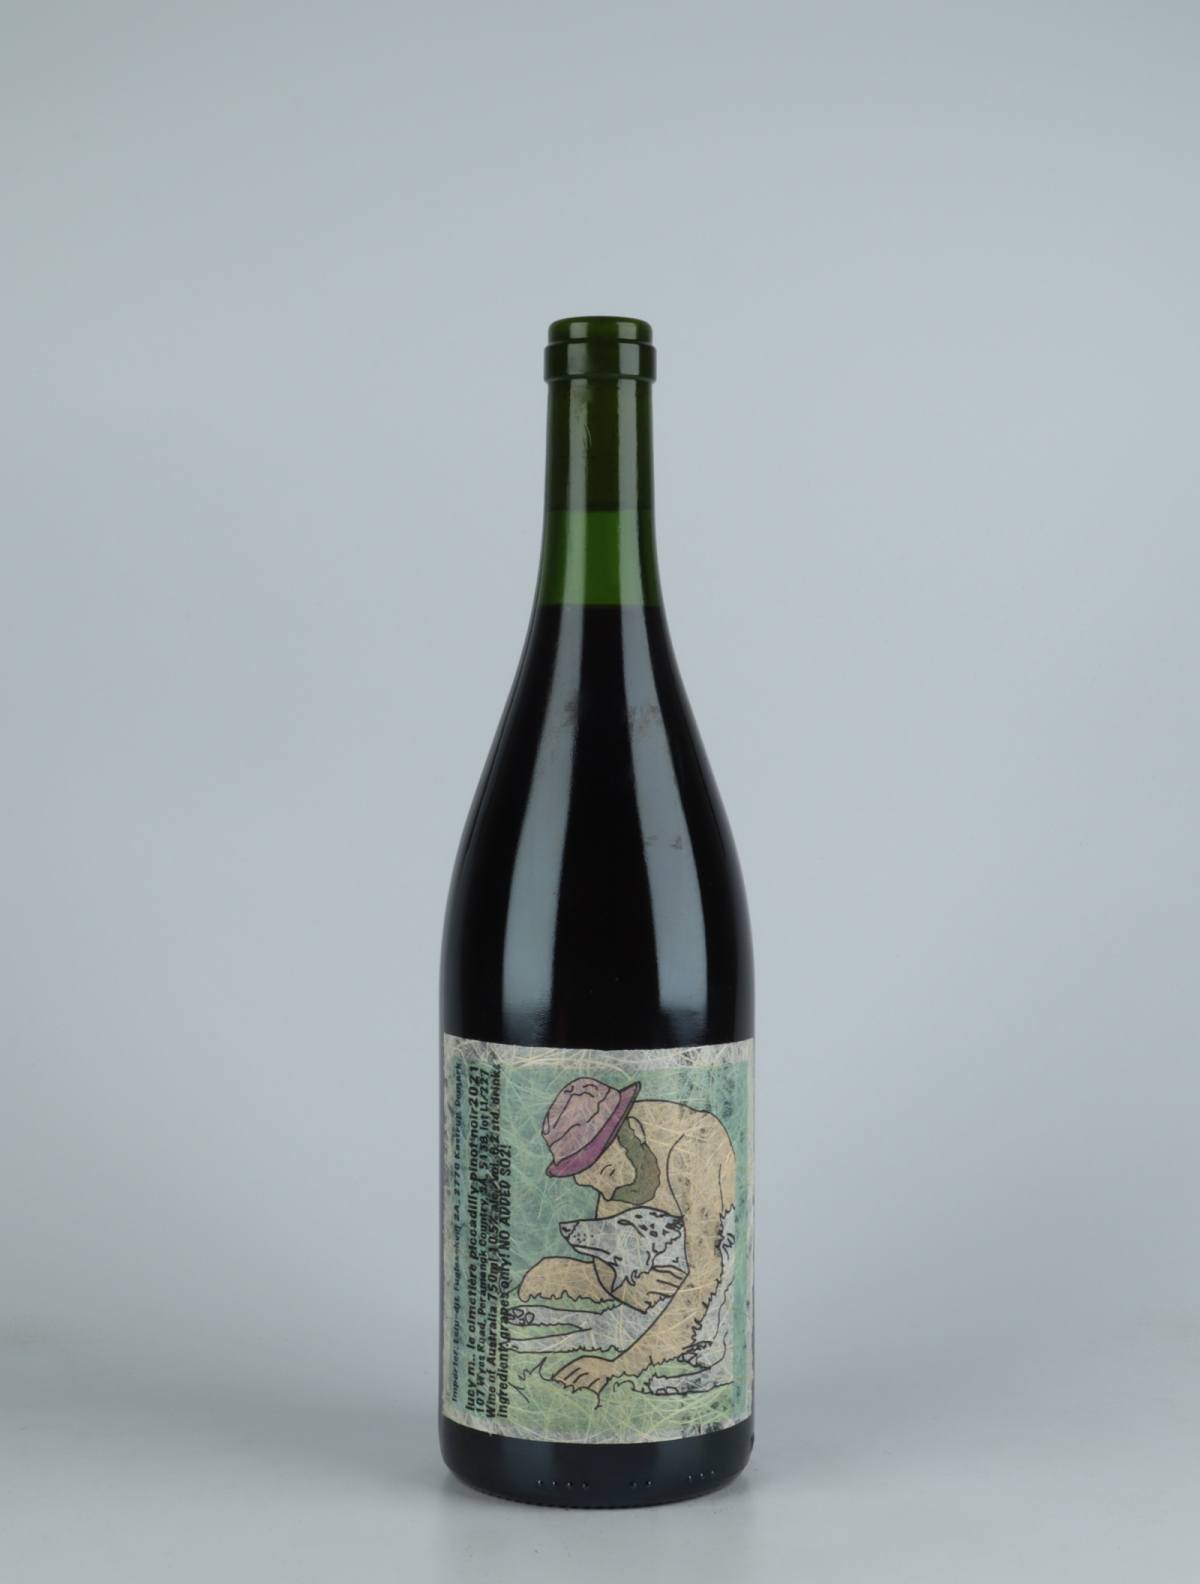 En flaske 2021 Le Cimetière Piccadilly Pinot Noir Rødvin fra Lucy Margaux, Adelaide Hills i Australien